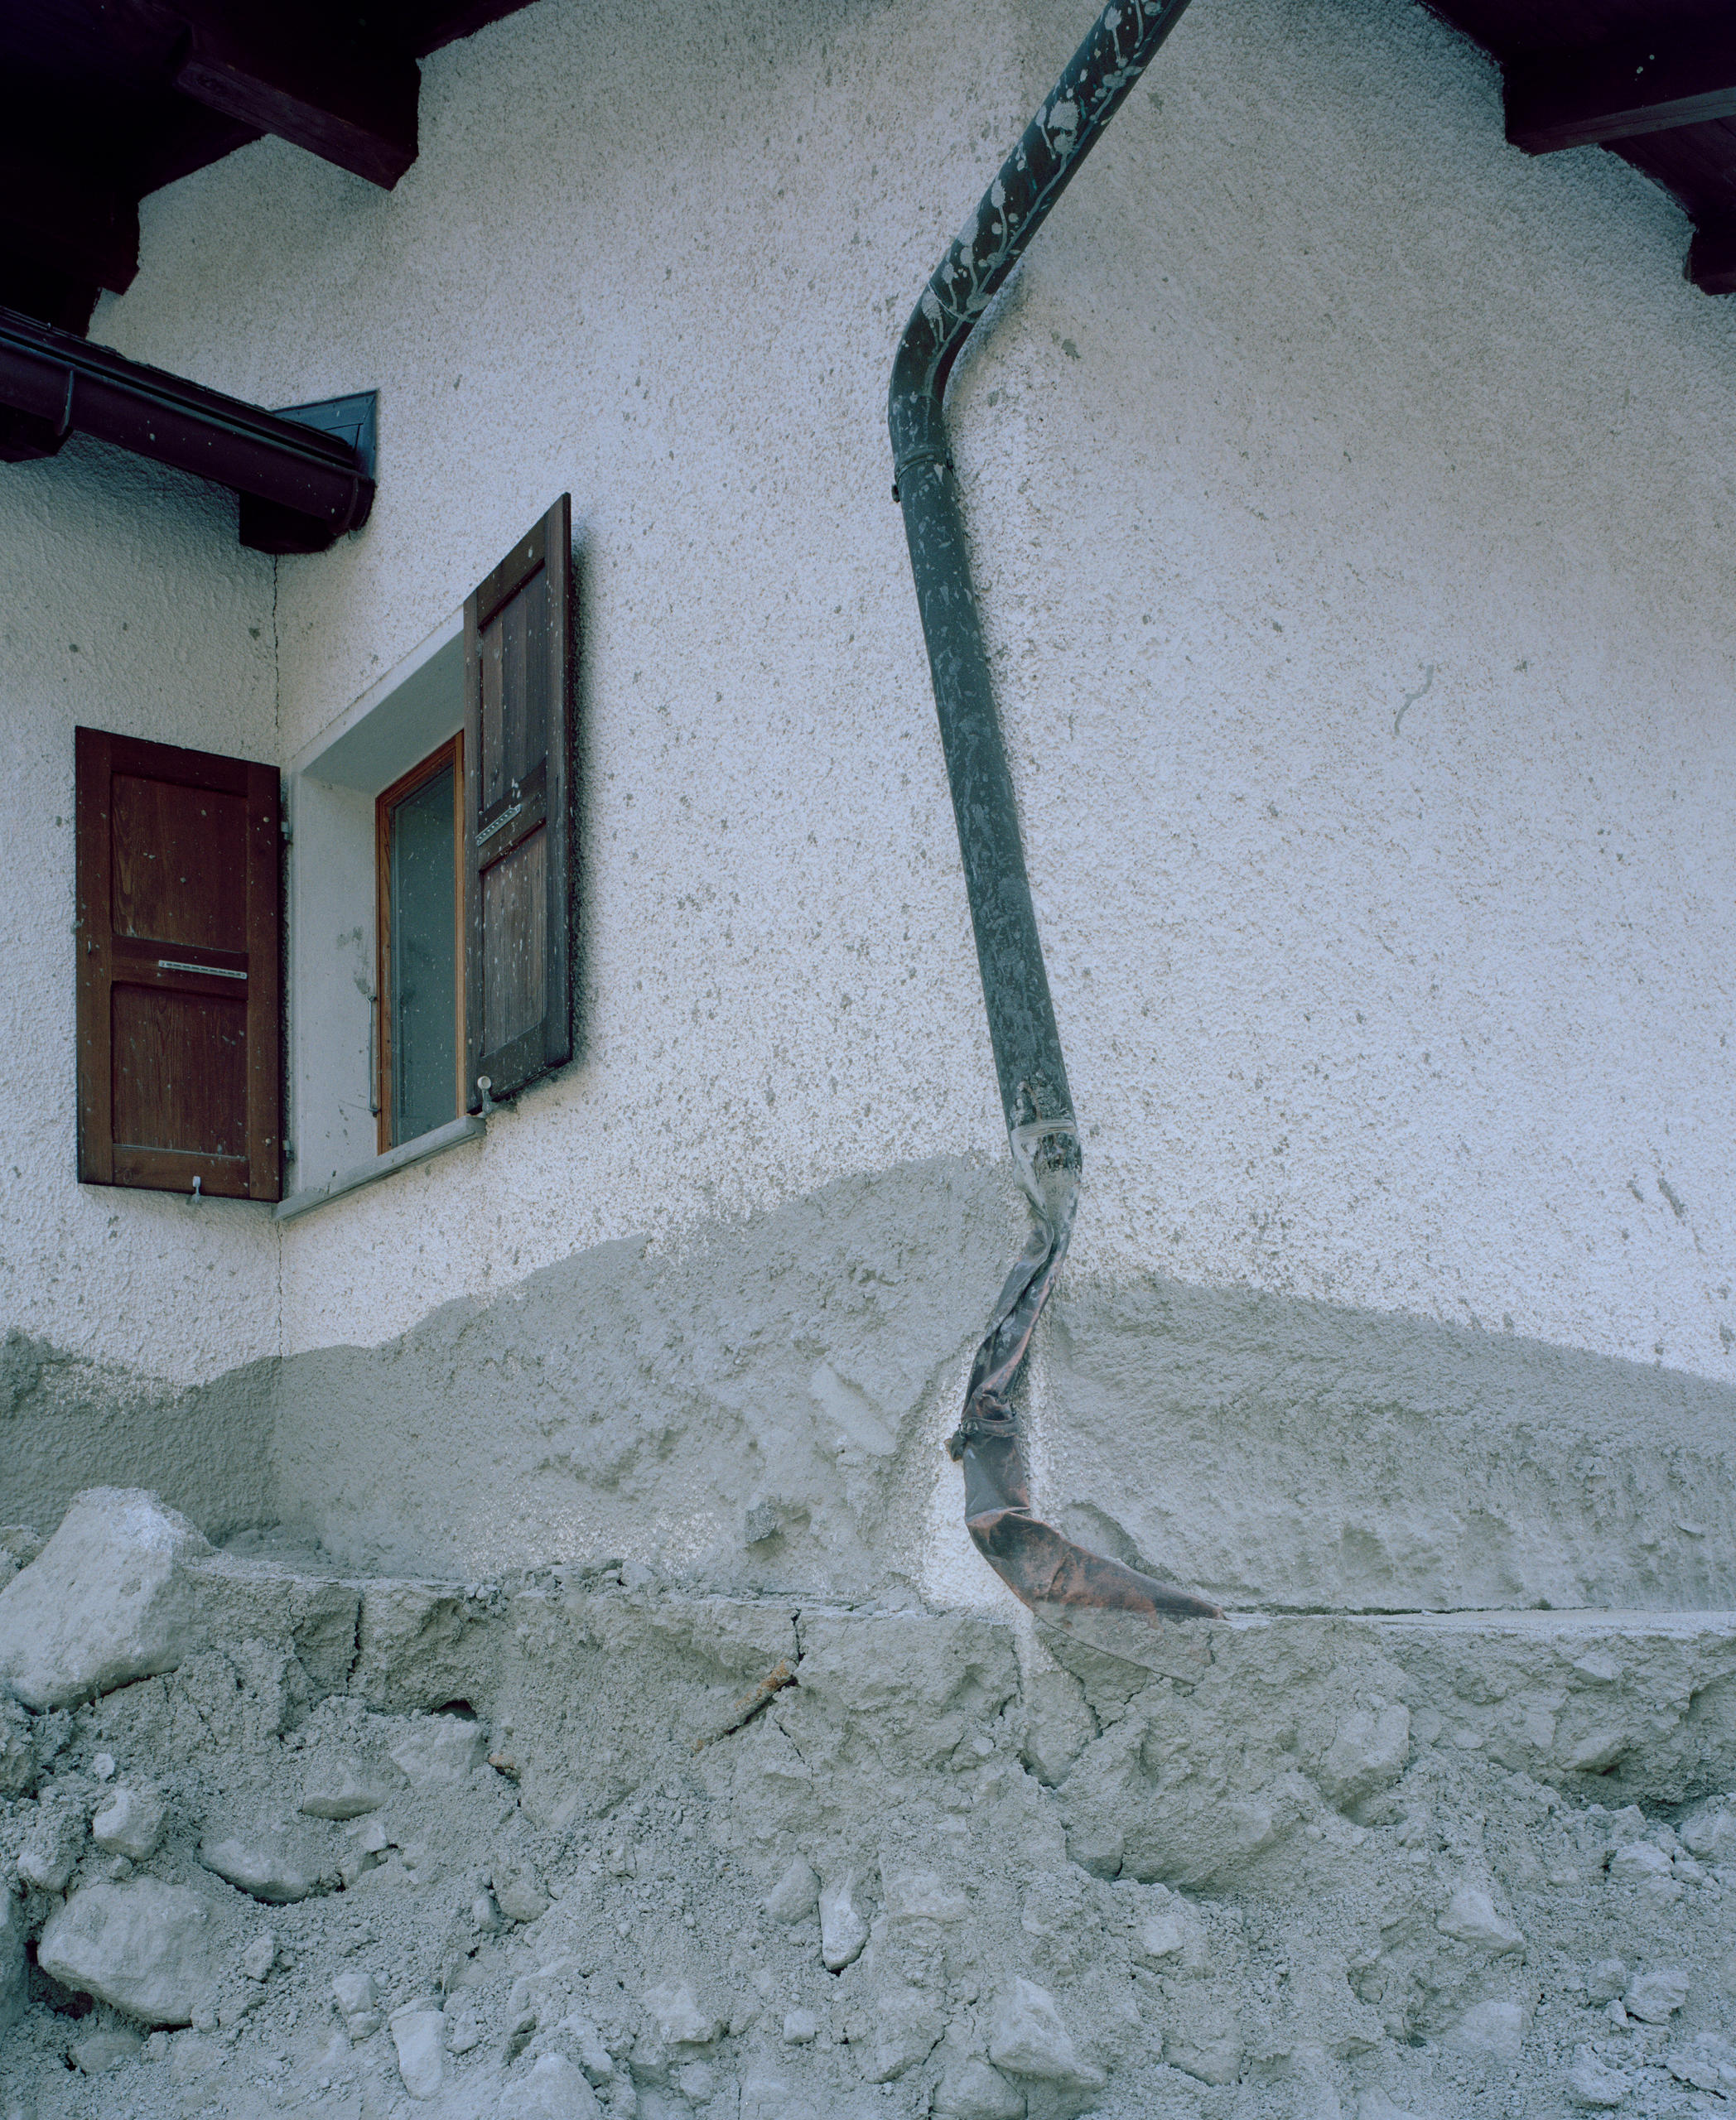 The damaged facade of a house